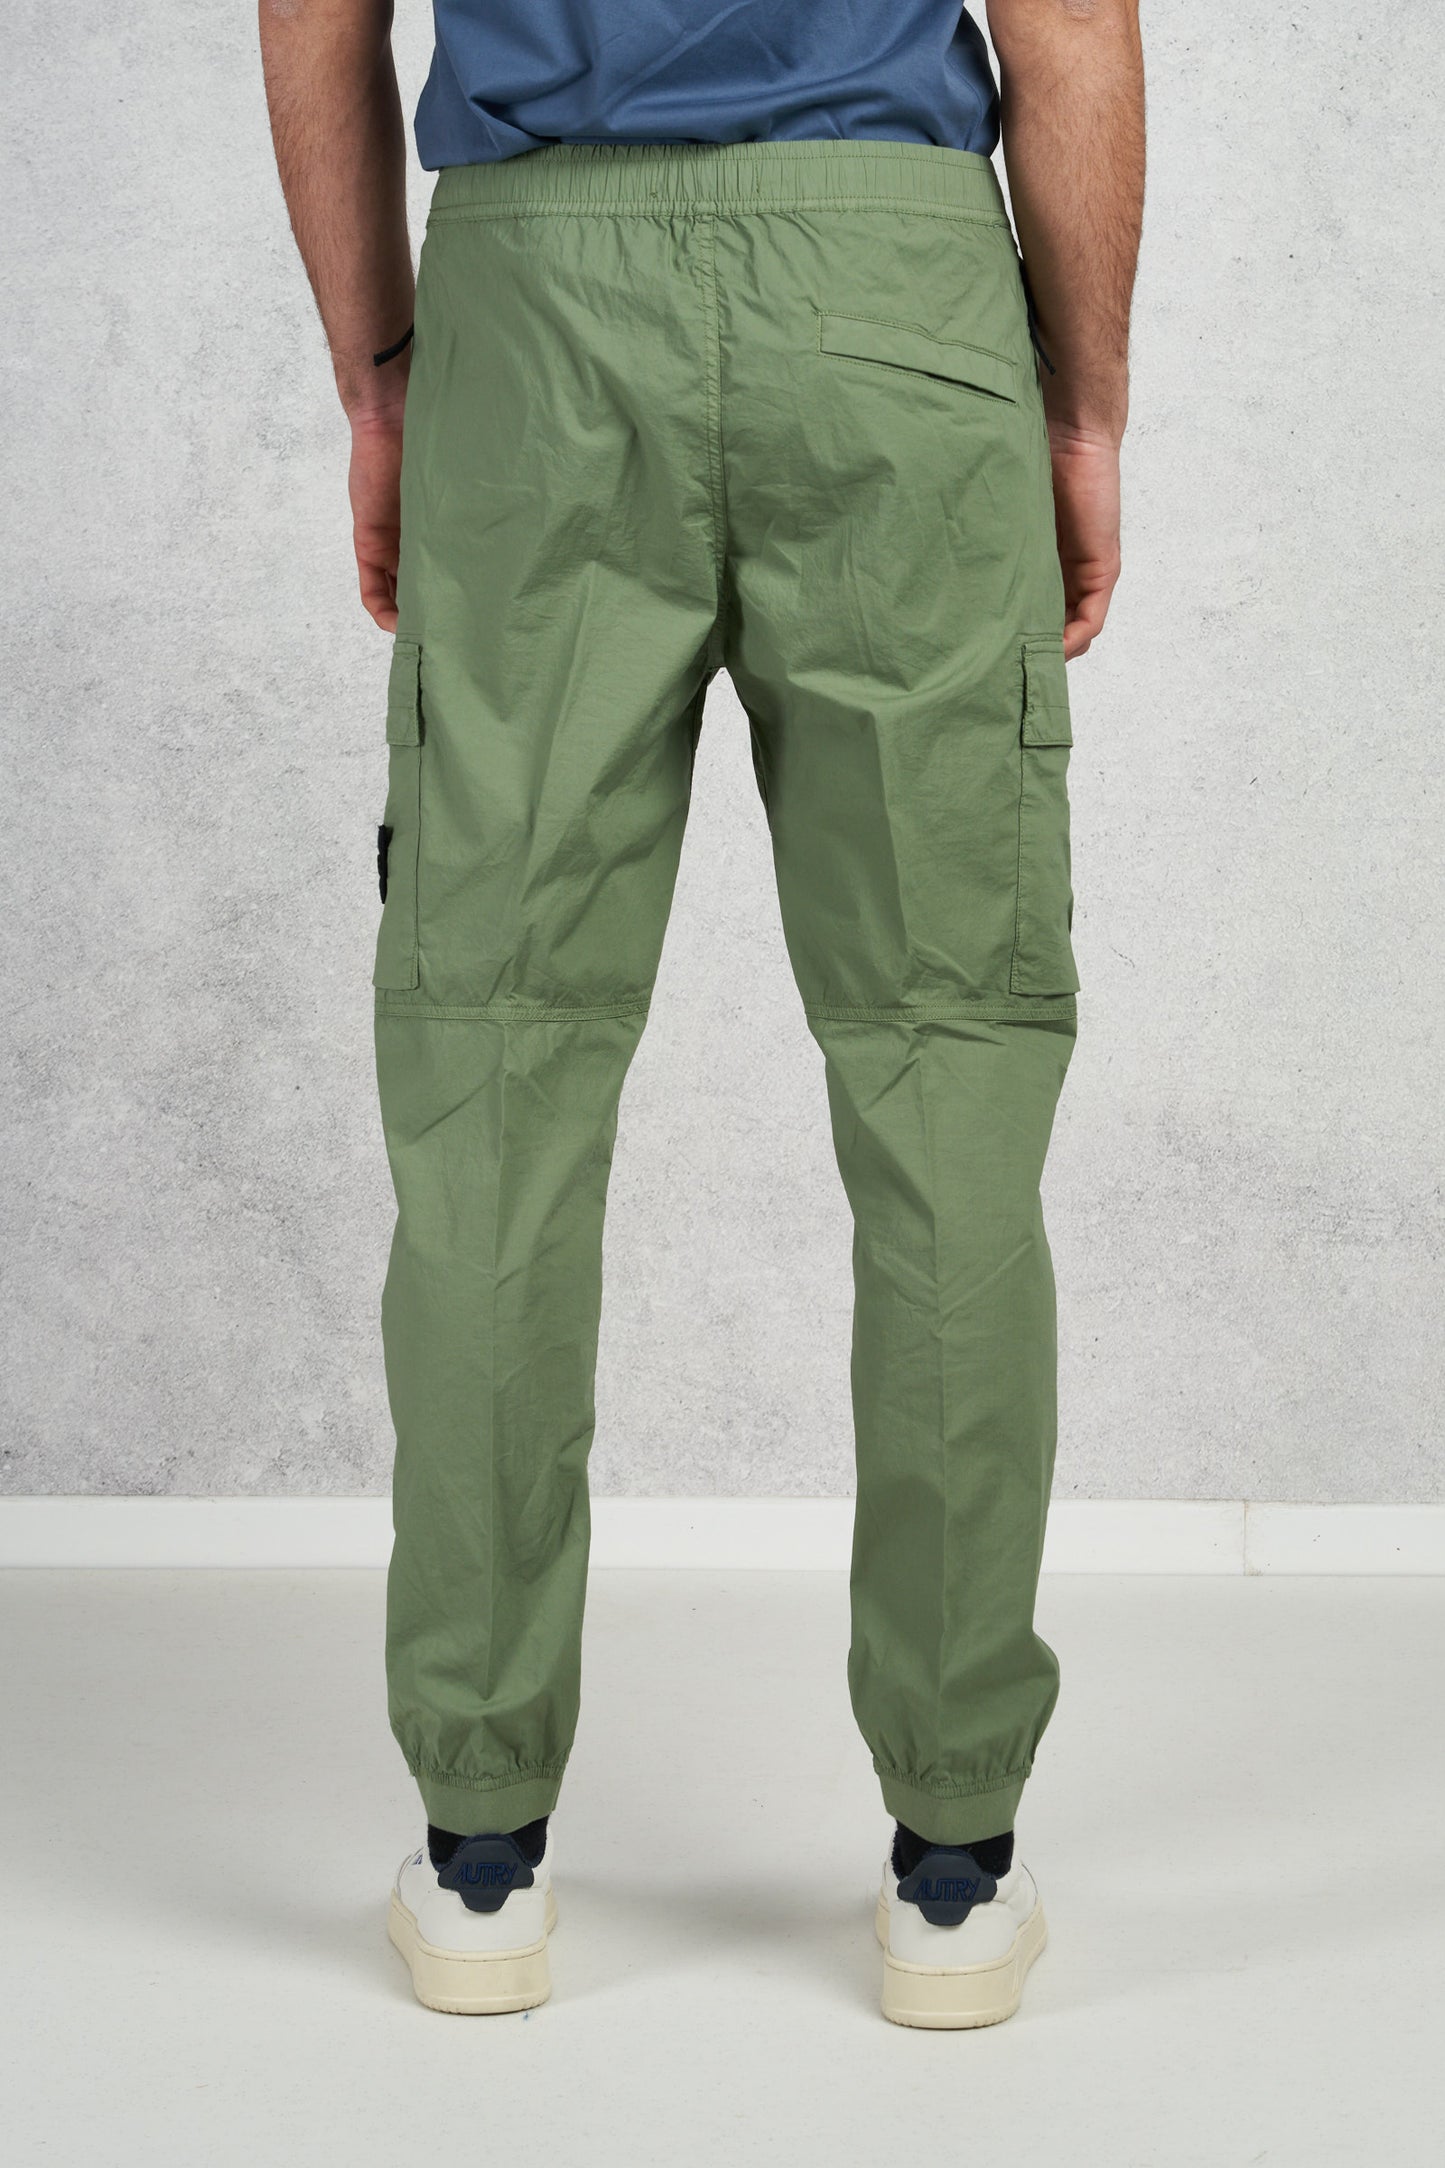  Stone Island Pantalone Con Tasche Verde Verde Uomo - 4